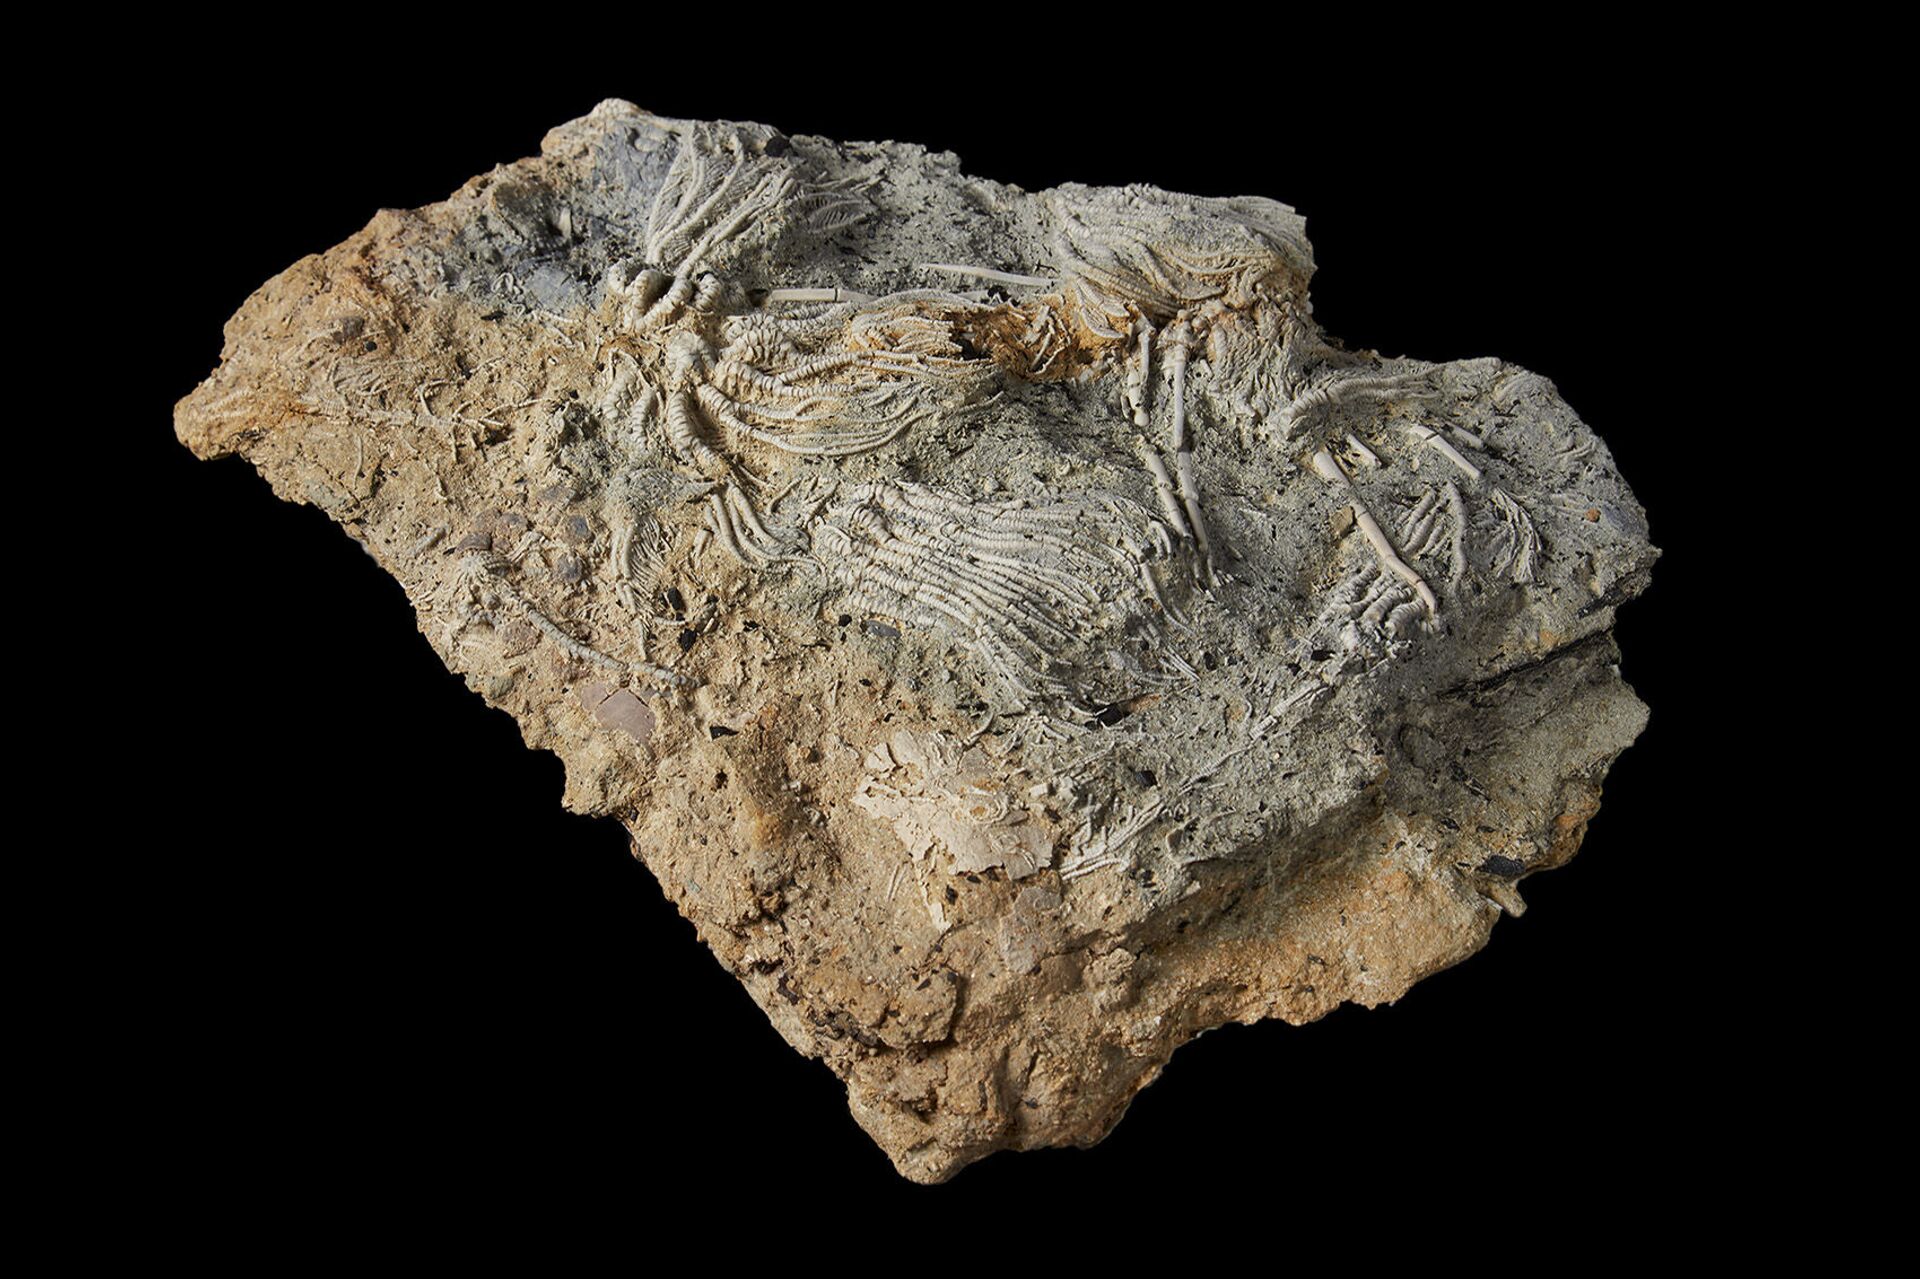 'Pompeia Jurássica': pedreira britânica revela fósseis extraordinários de animais marinhos (FOTOS) - Sputnik Brasil, 1920, 22.07.2021